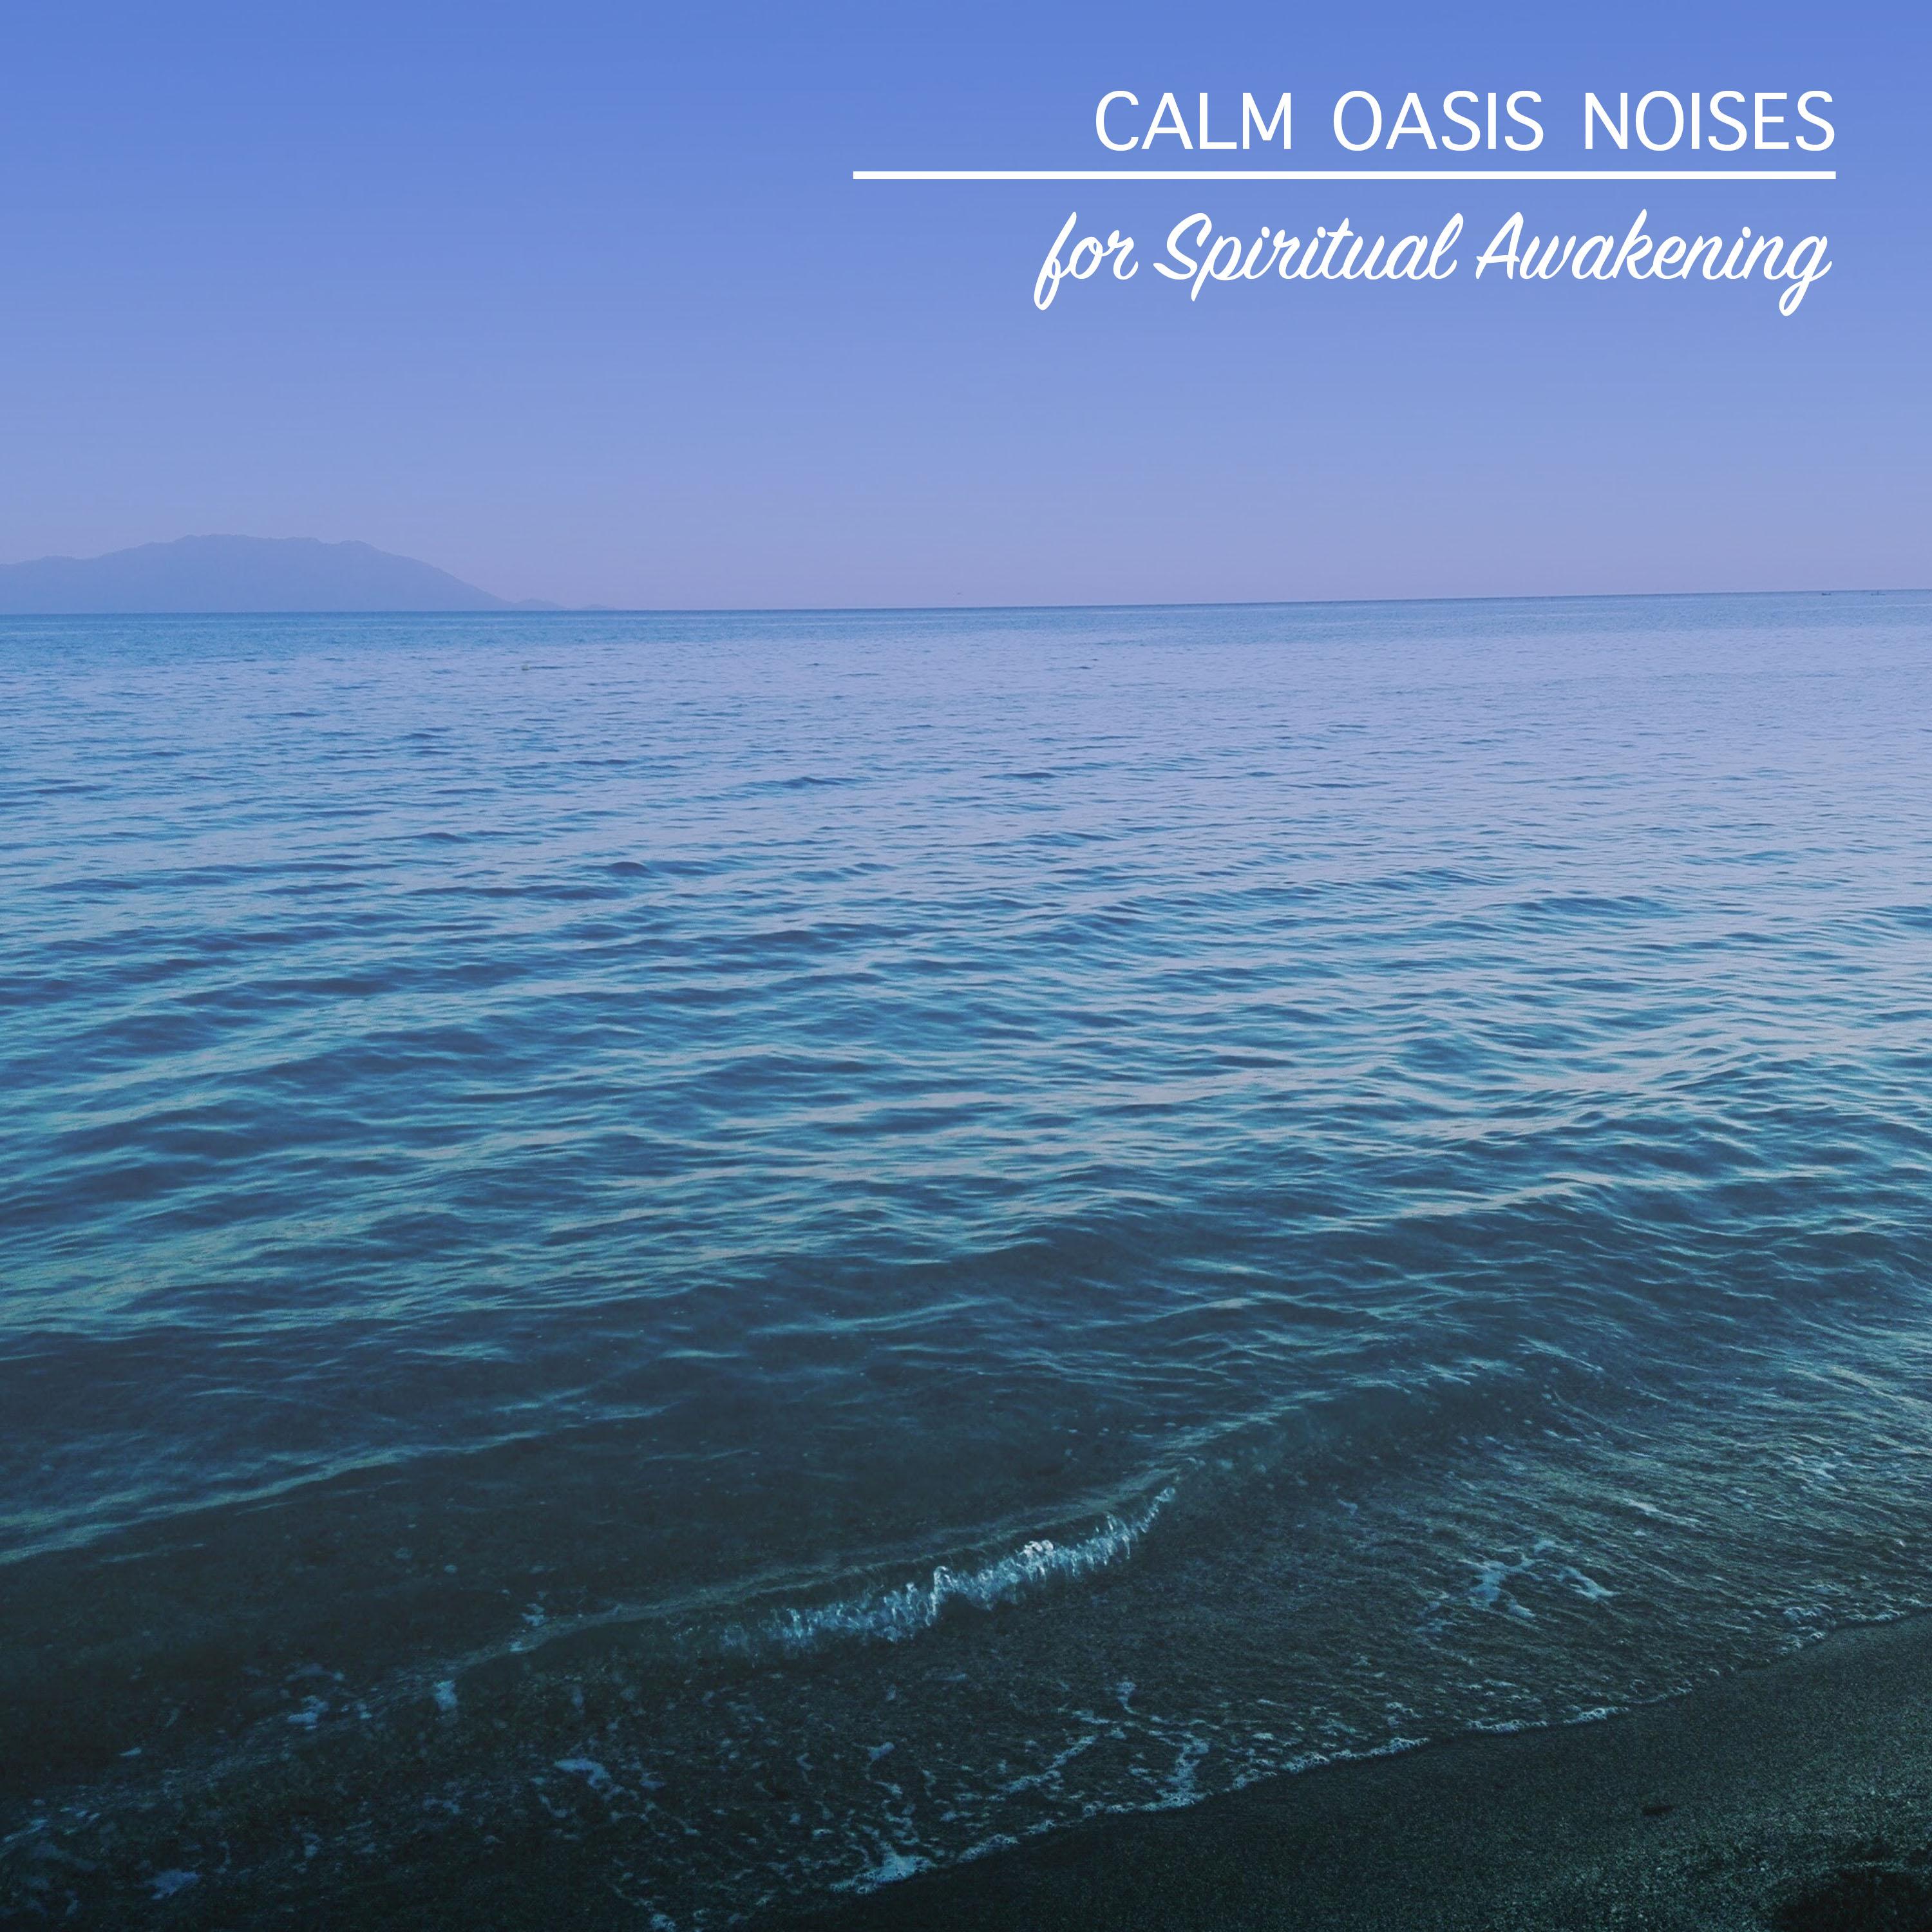 15 Calm Oasis Noises for Spirital Awakening